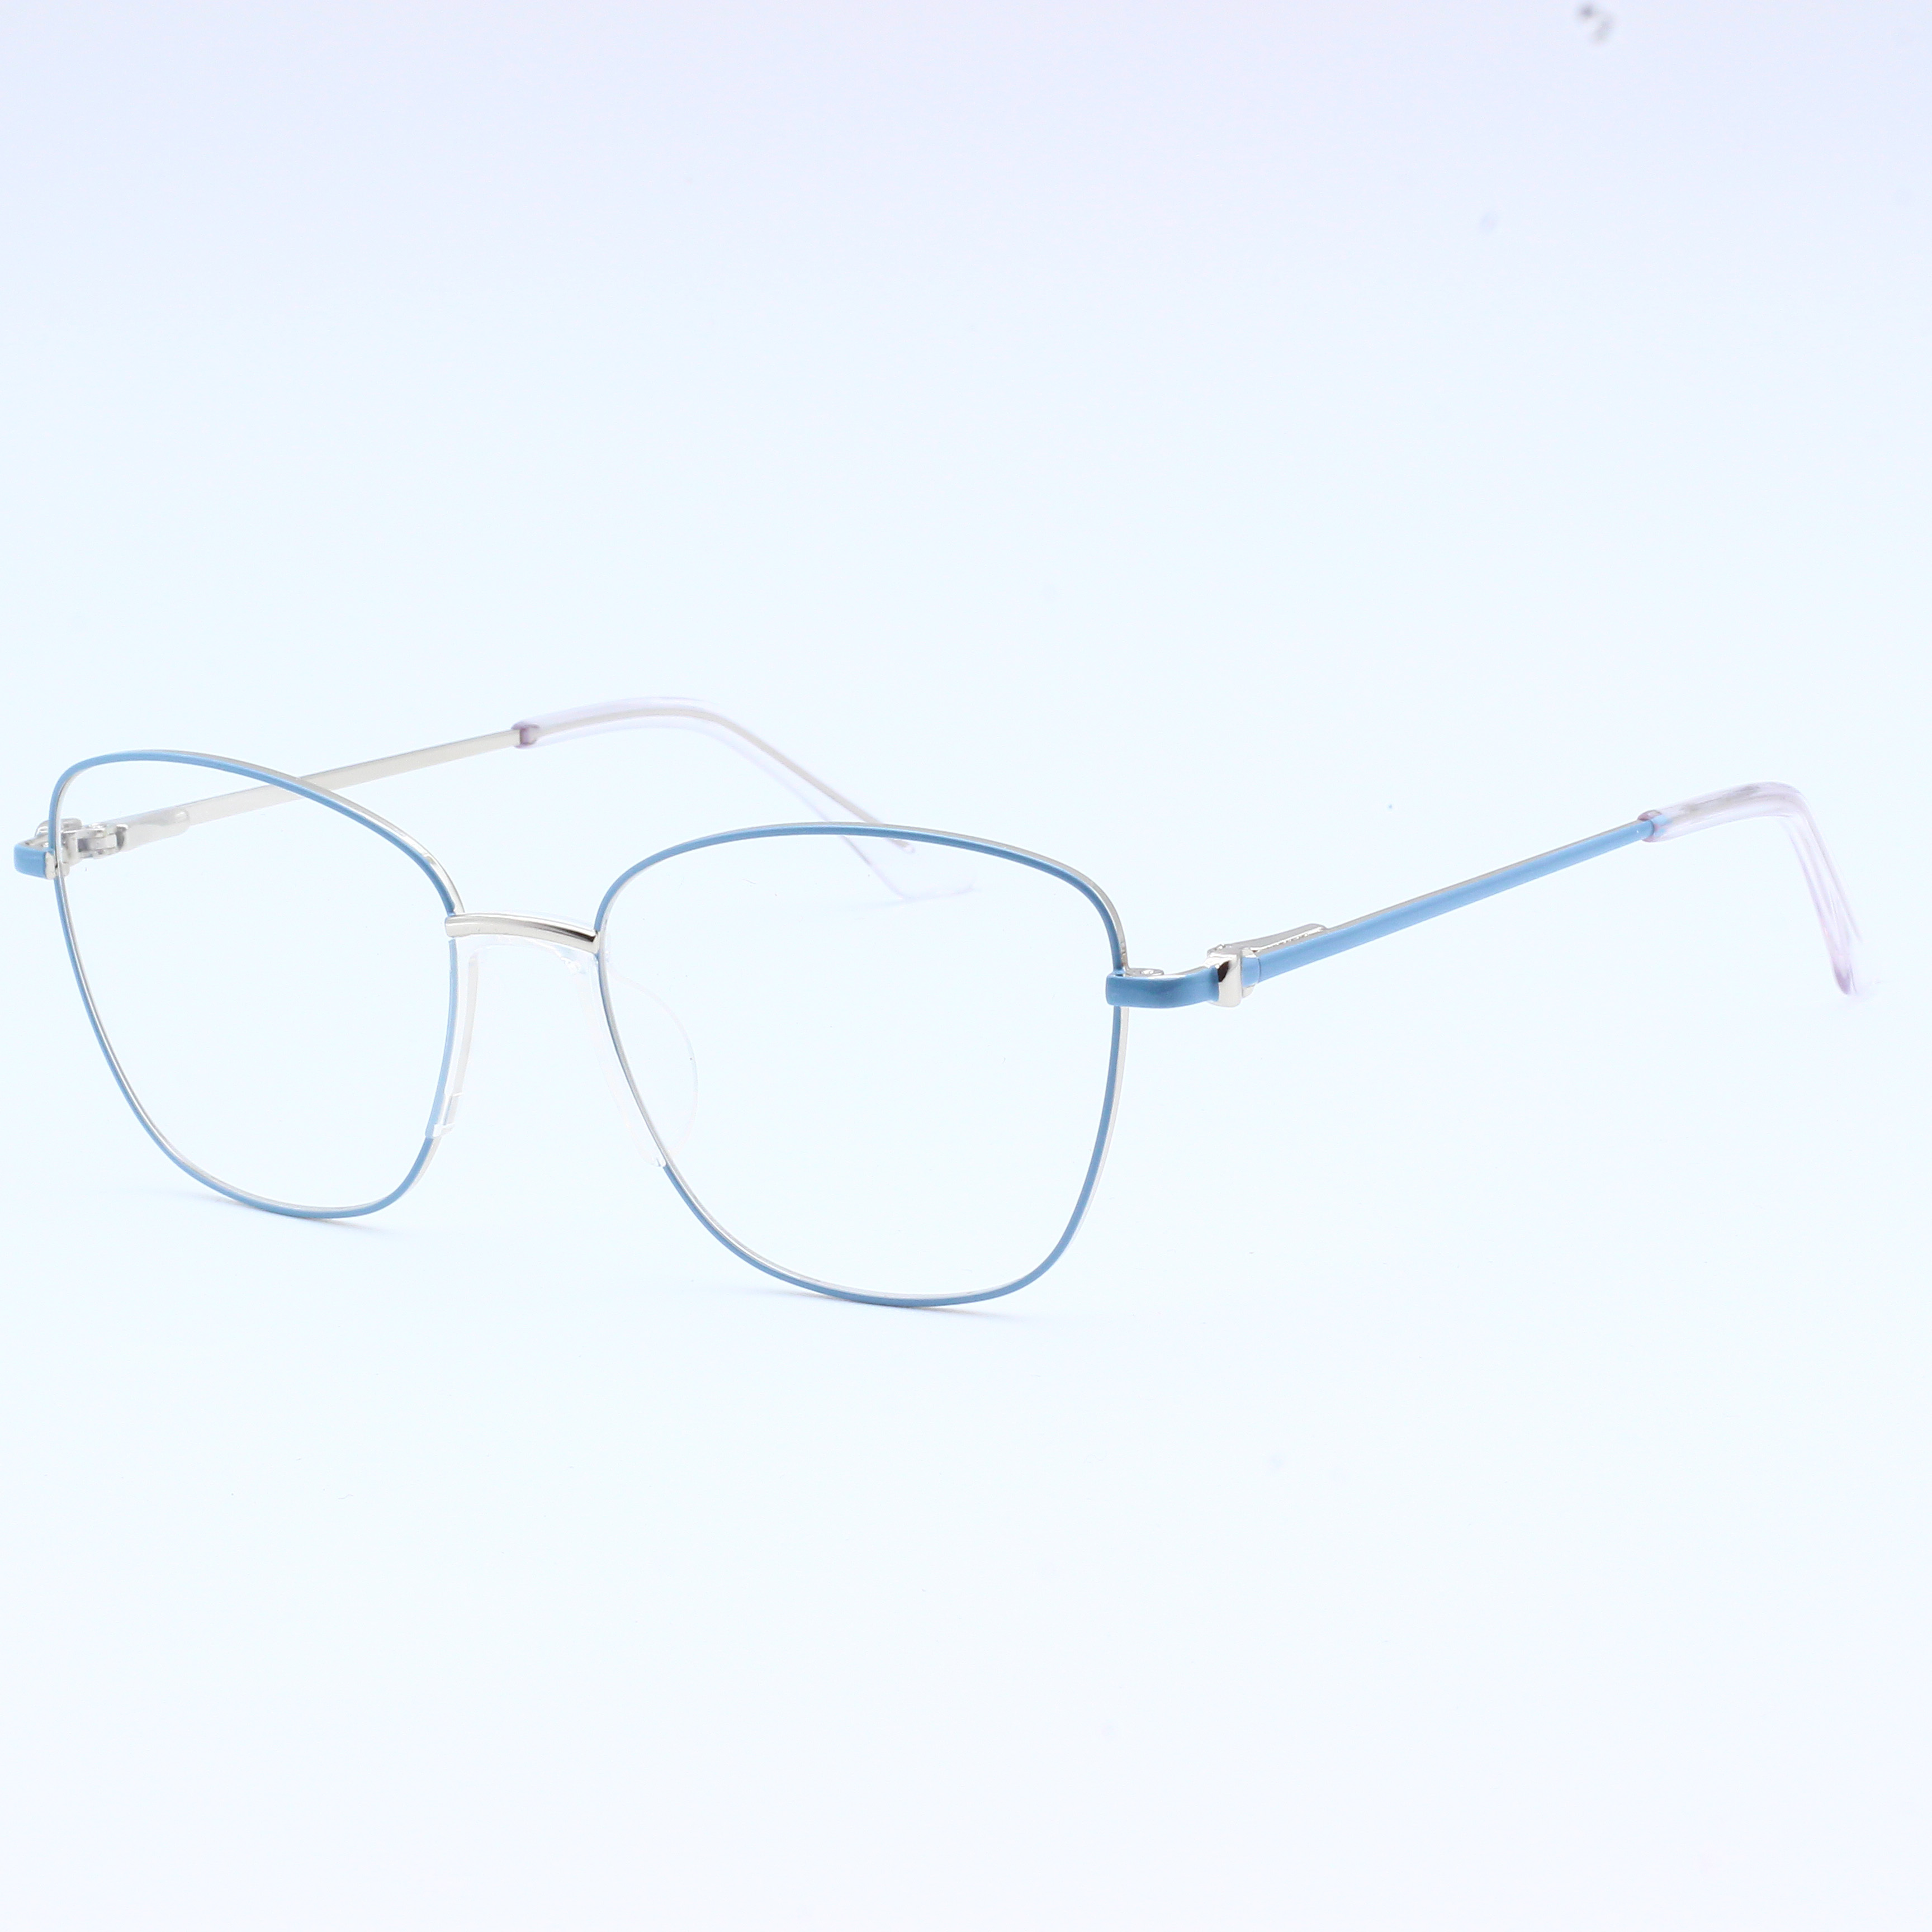 Anti Blue Rays Glasses Spring Leg Eyeglasses Optical Frames (6)